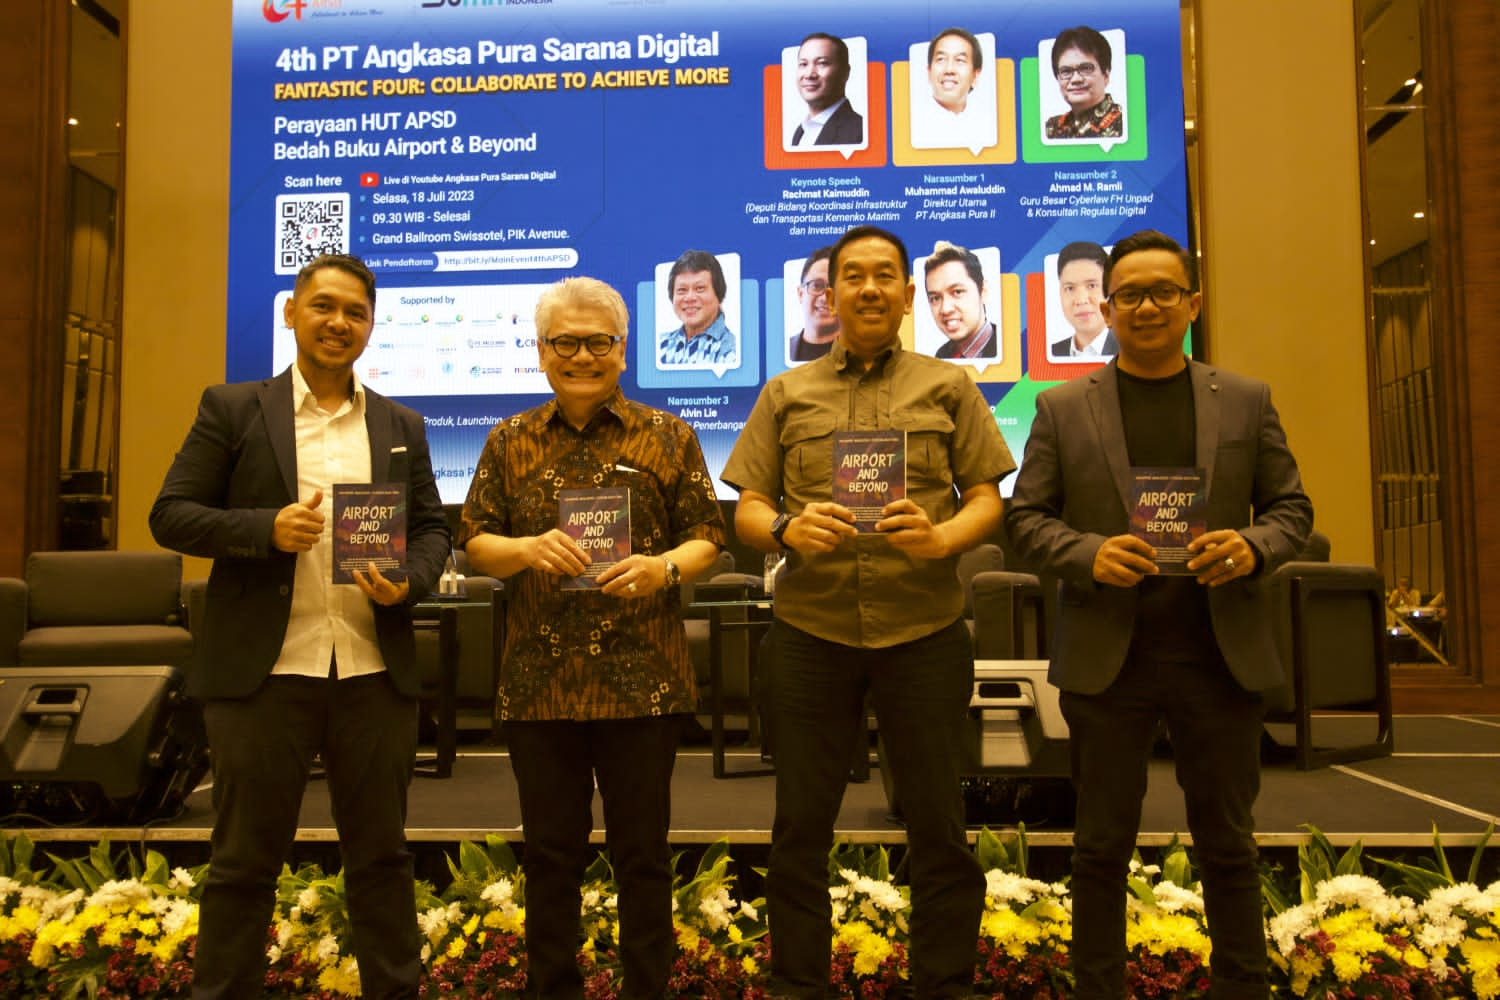 Muhammad Awaluddin tuangkan peran inovasi teknologi di
Aiport & Beyond